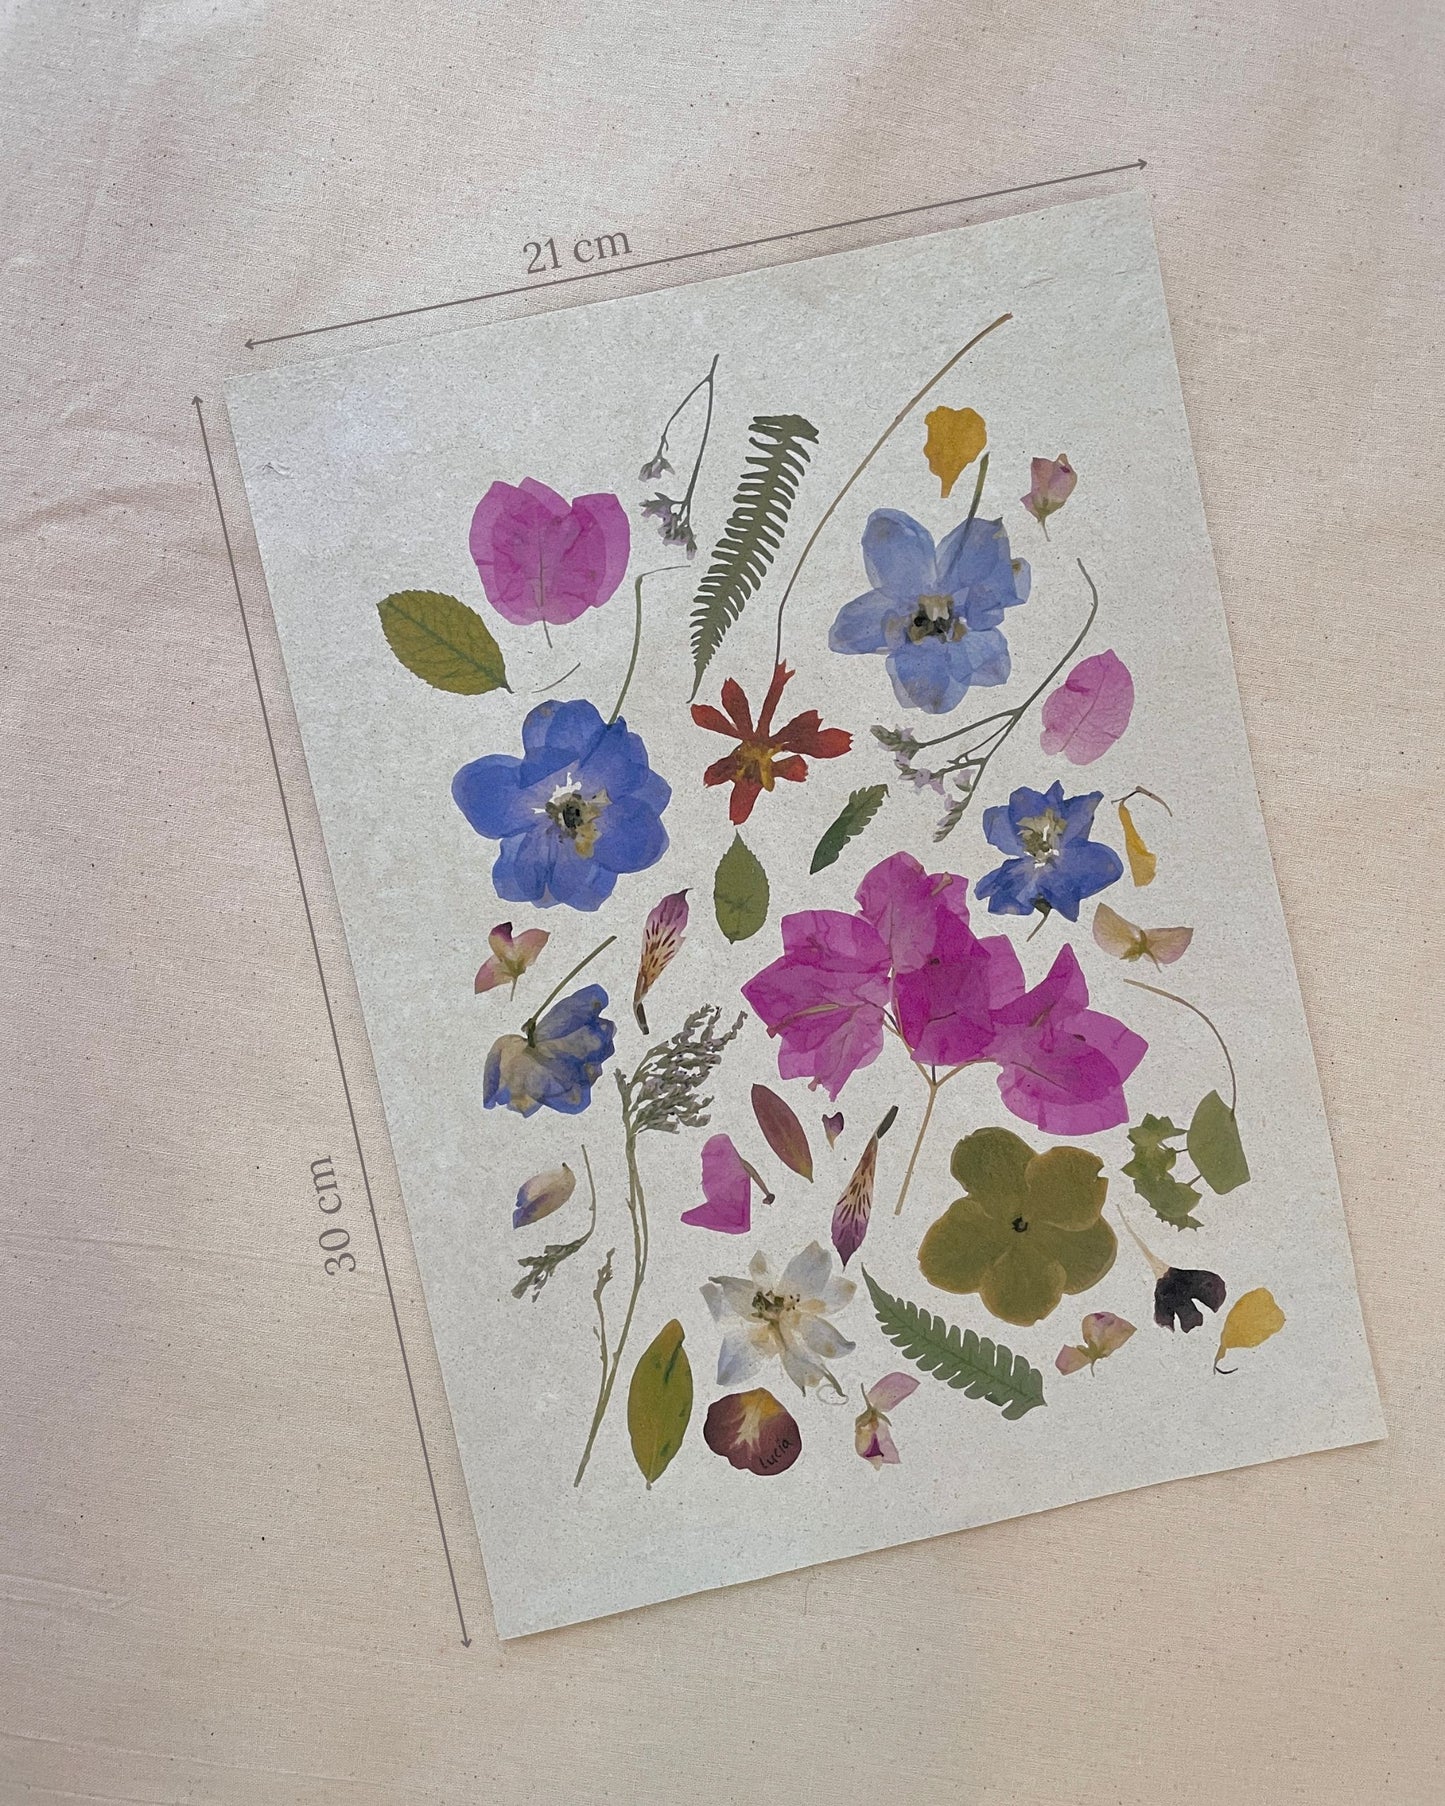 Prints de collage de flores colombianas prensadas autografiadas por la artista, con flores de todos los colores.